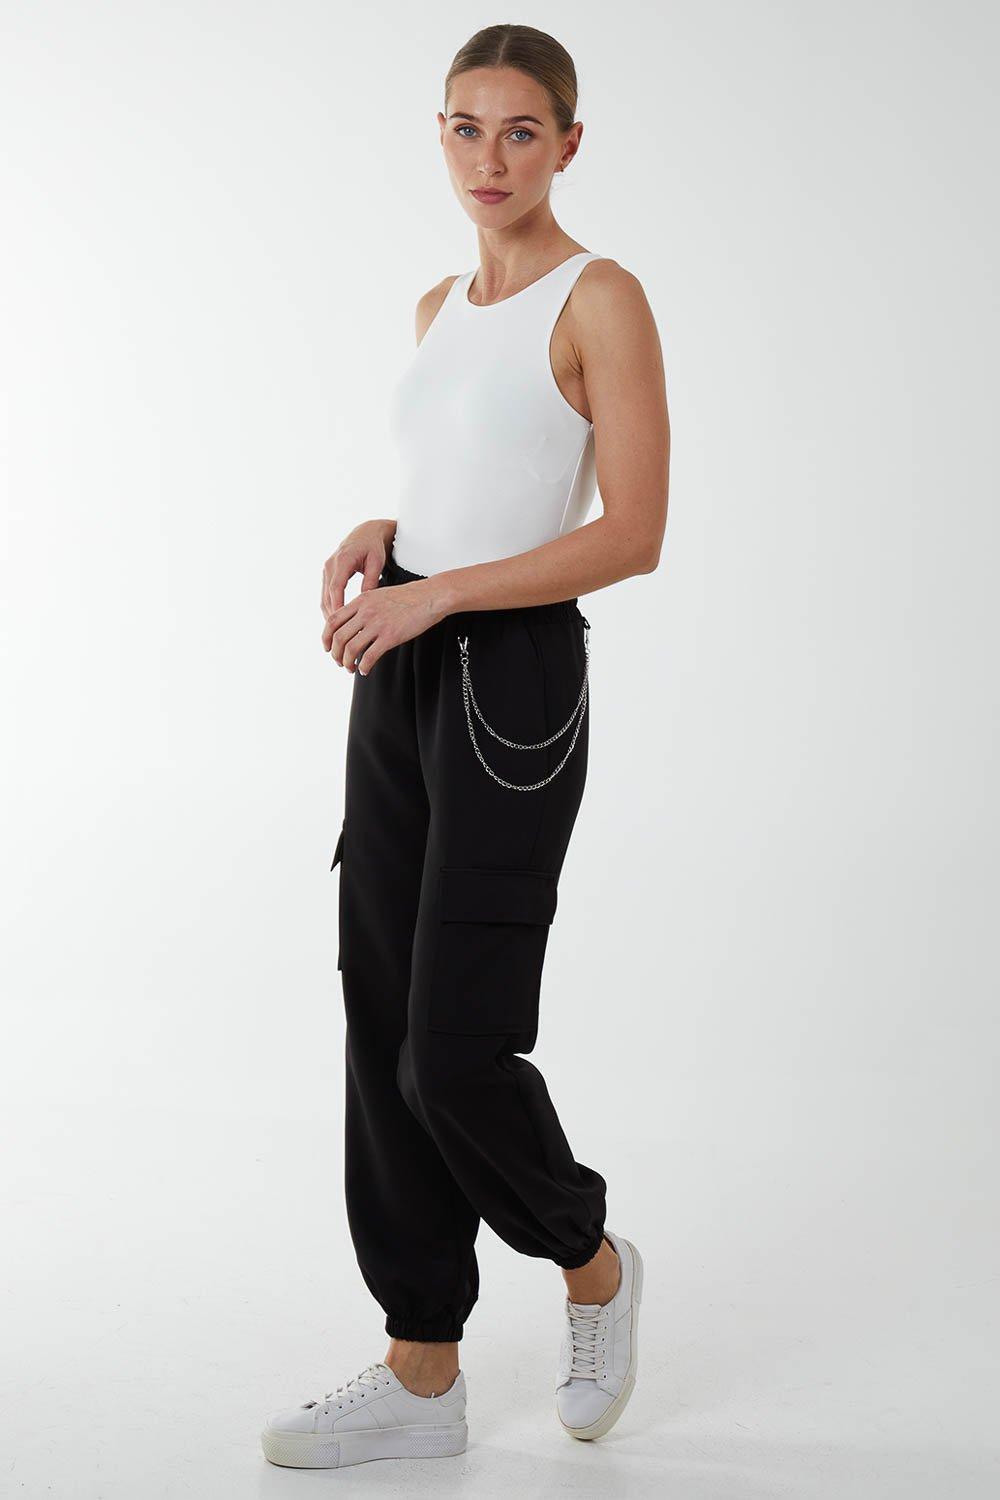 Glitter pattern cargo trousers - Women's Clothing Wholesale - Modazen